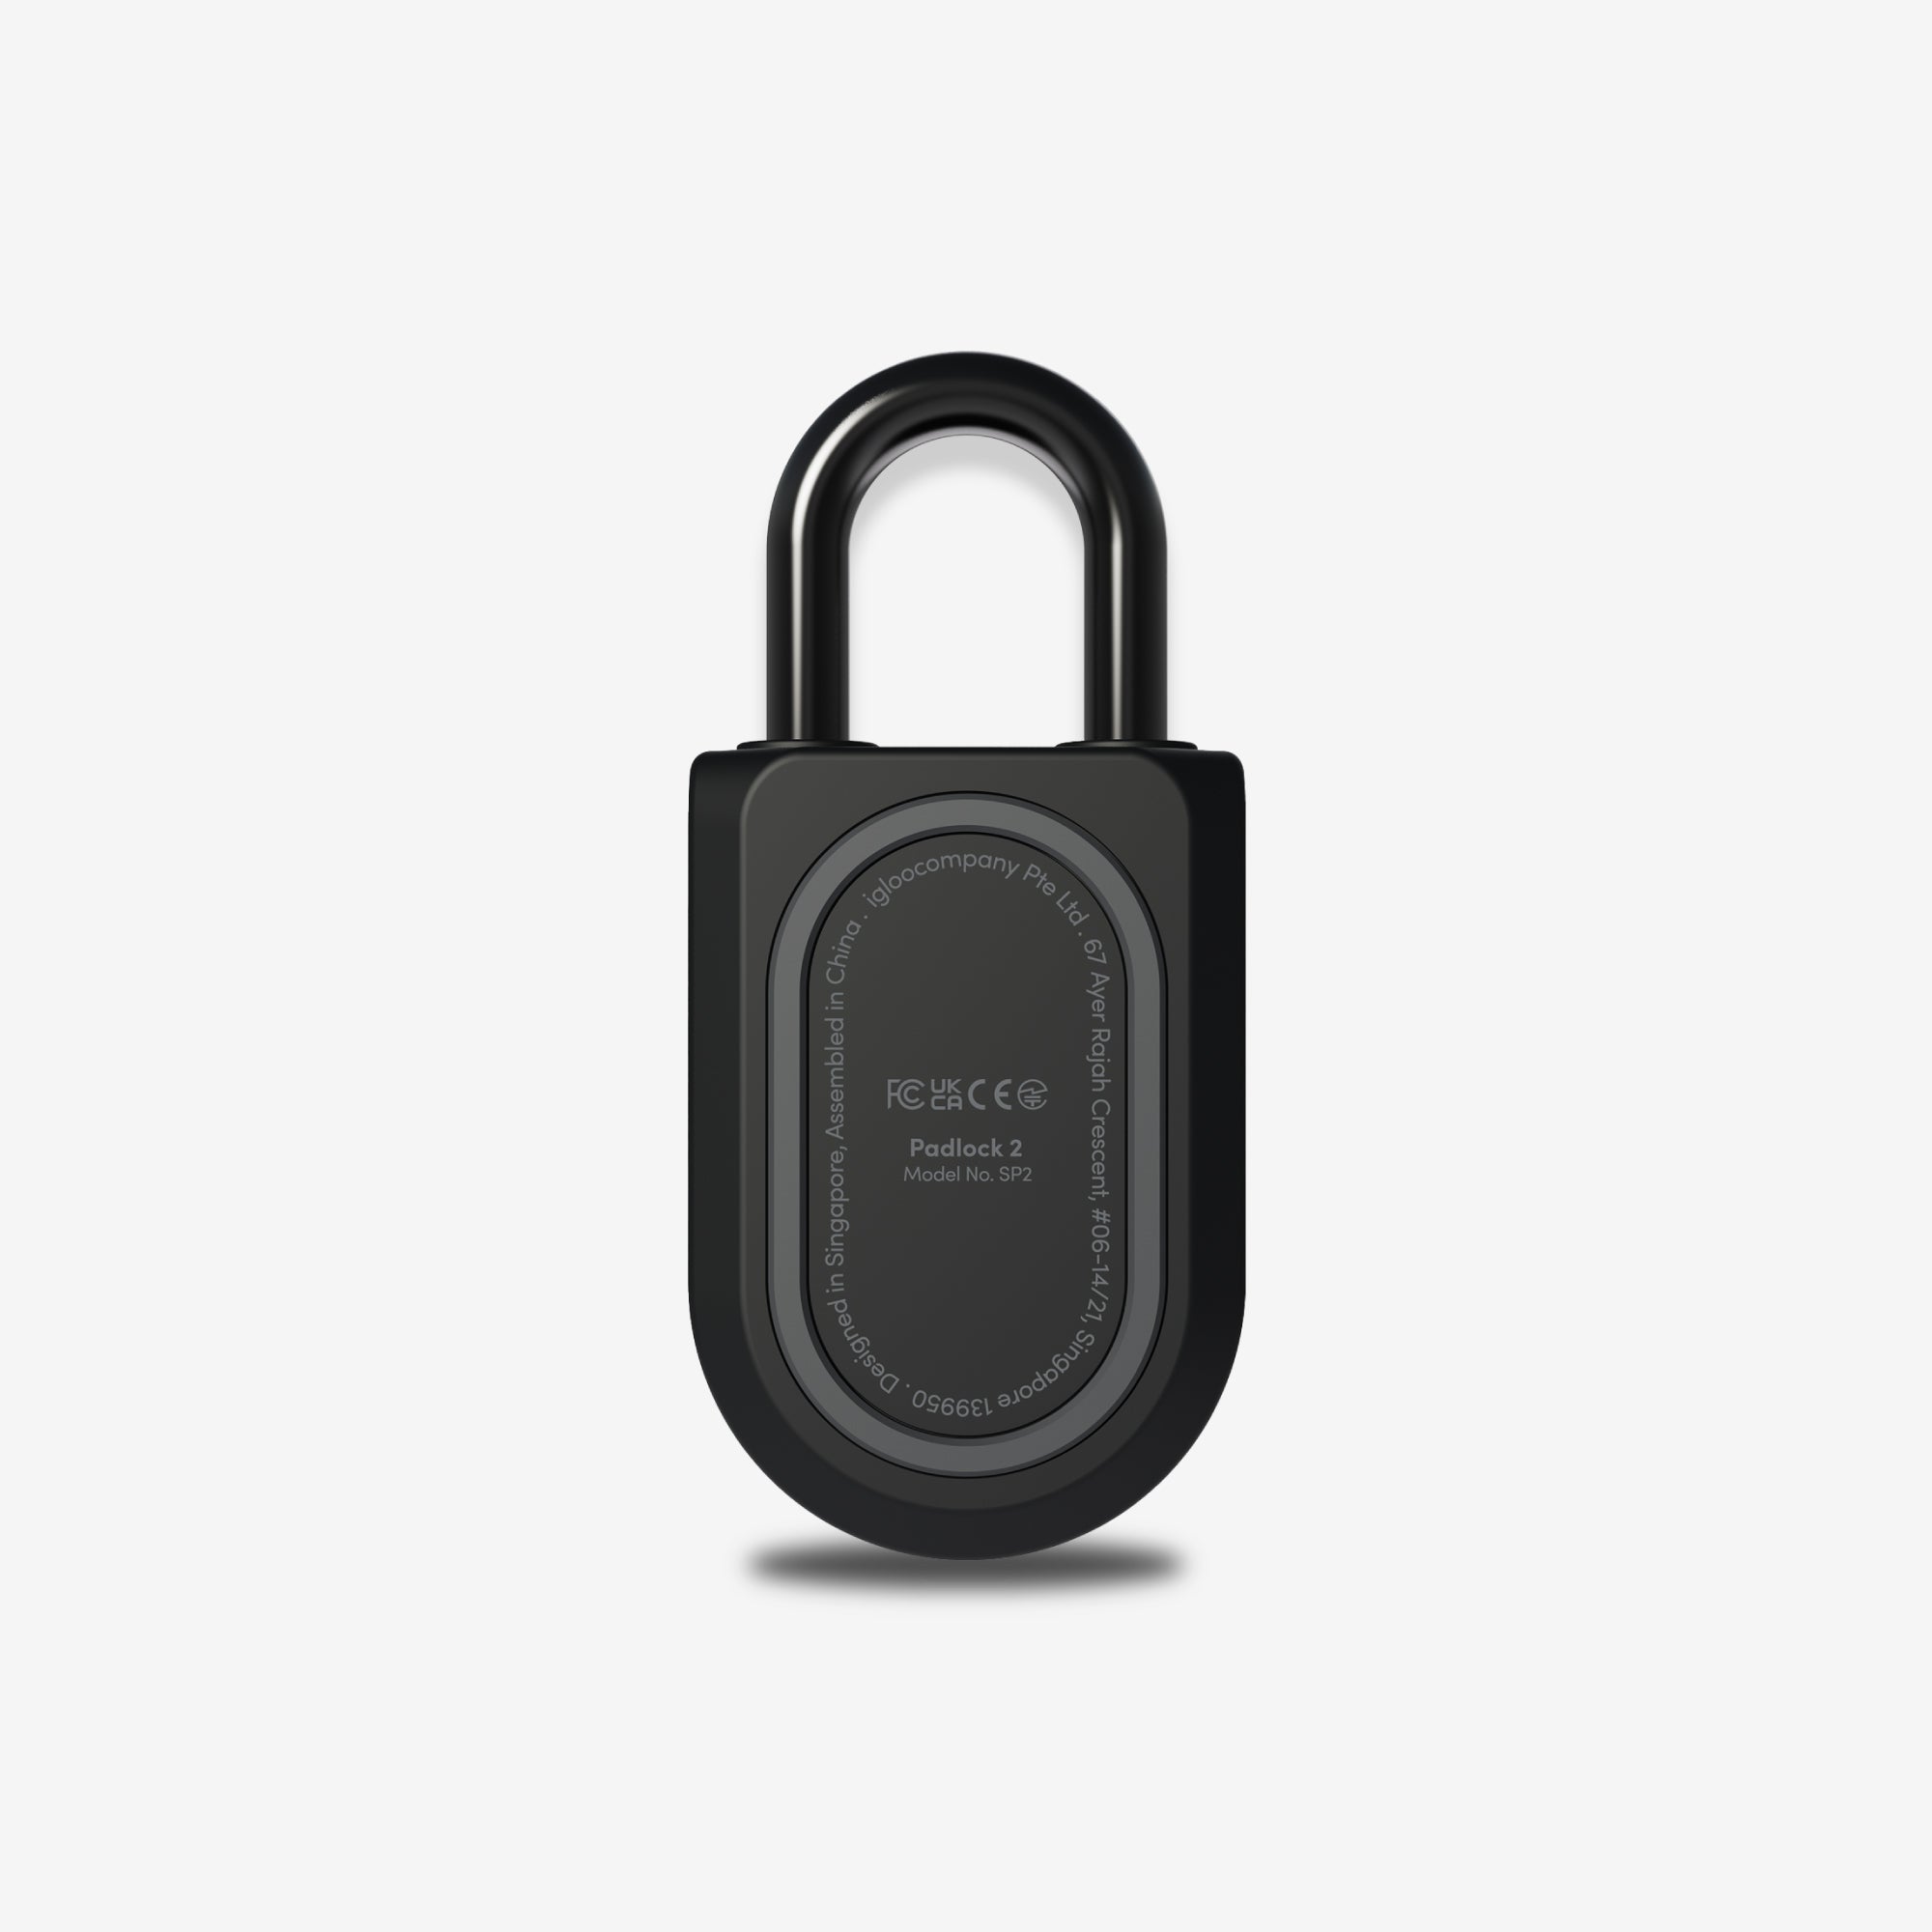 Cerradura Inteligente Igloohome Mortise Touch, con acceso vía app, lector de huella digital, código PIN, tarjeta RFID y llave mecánica de alta seguridad.